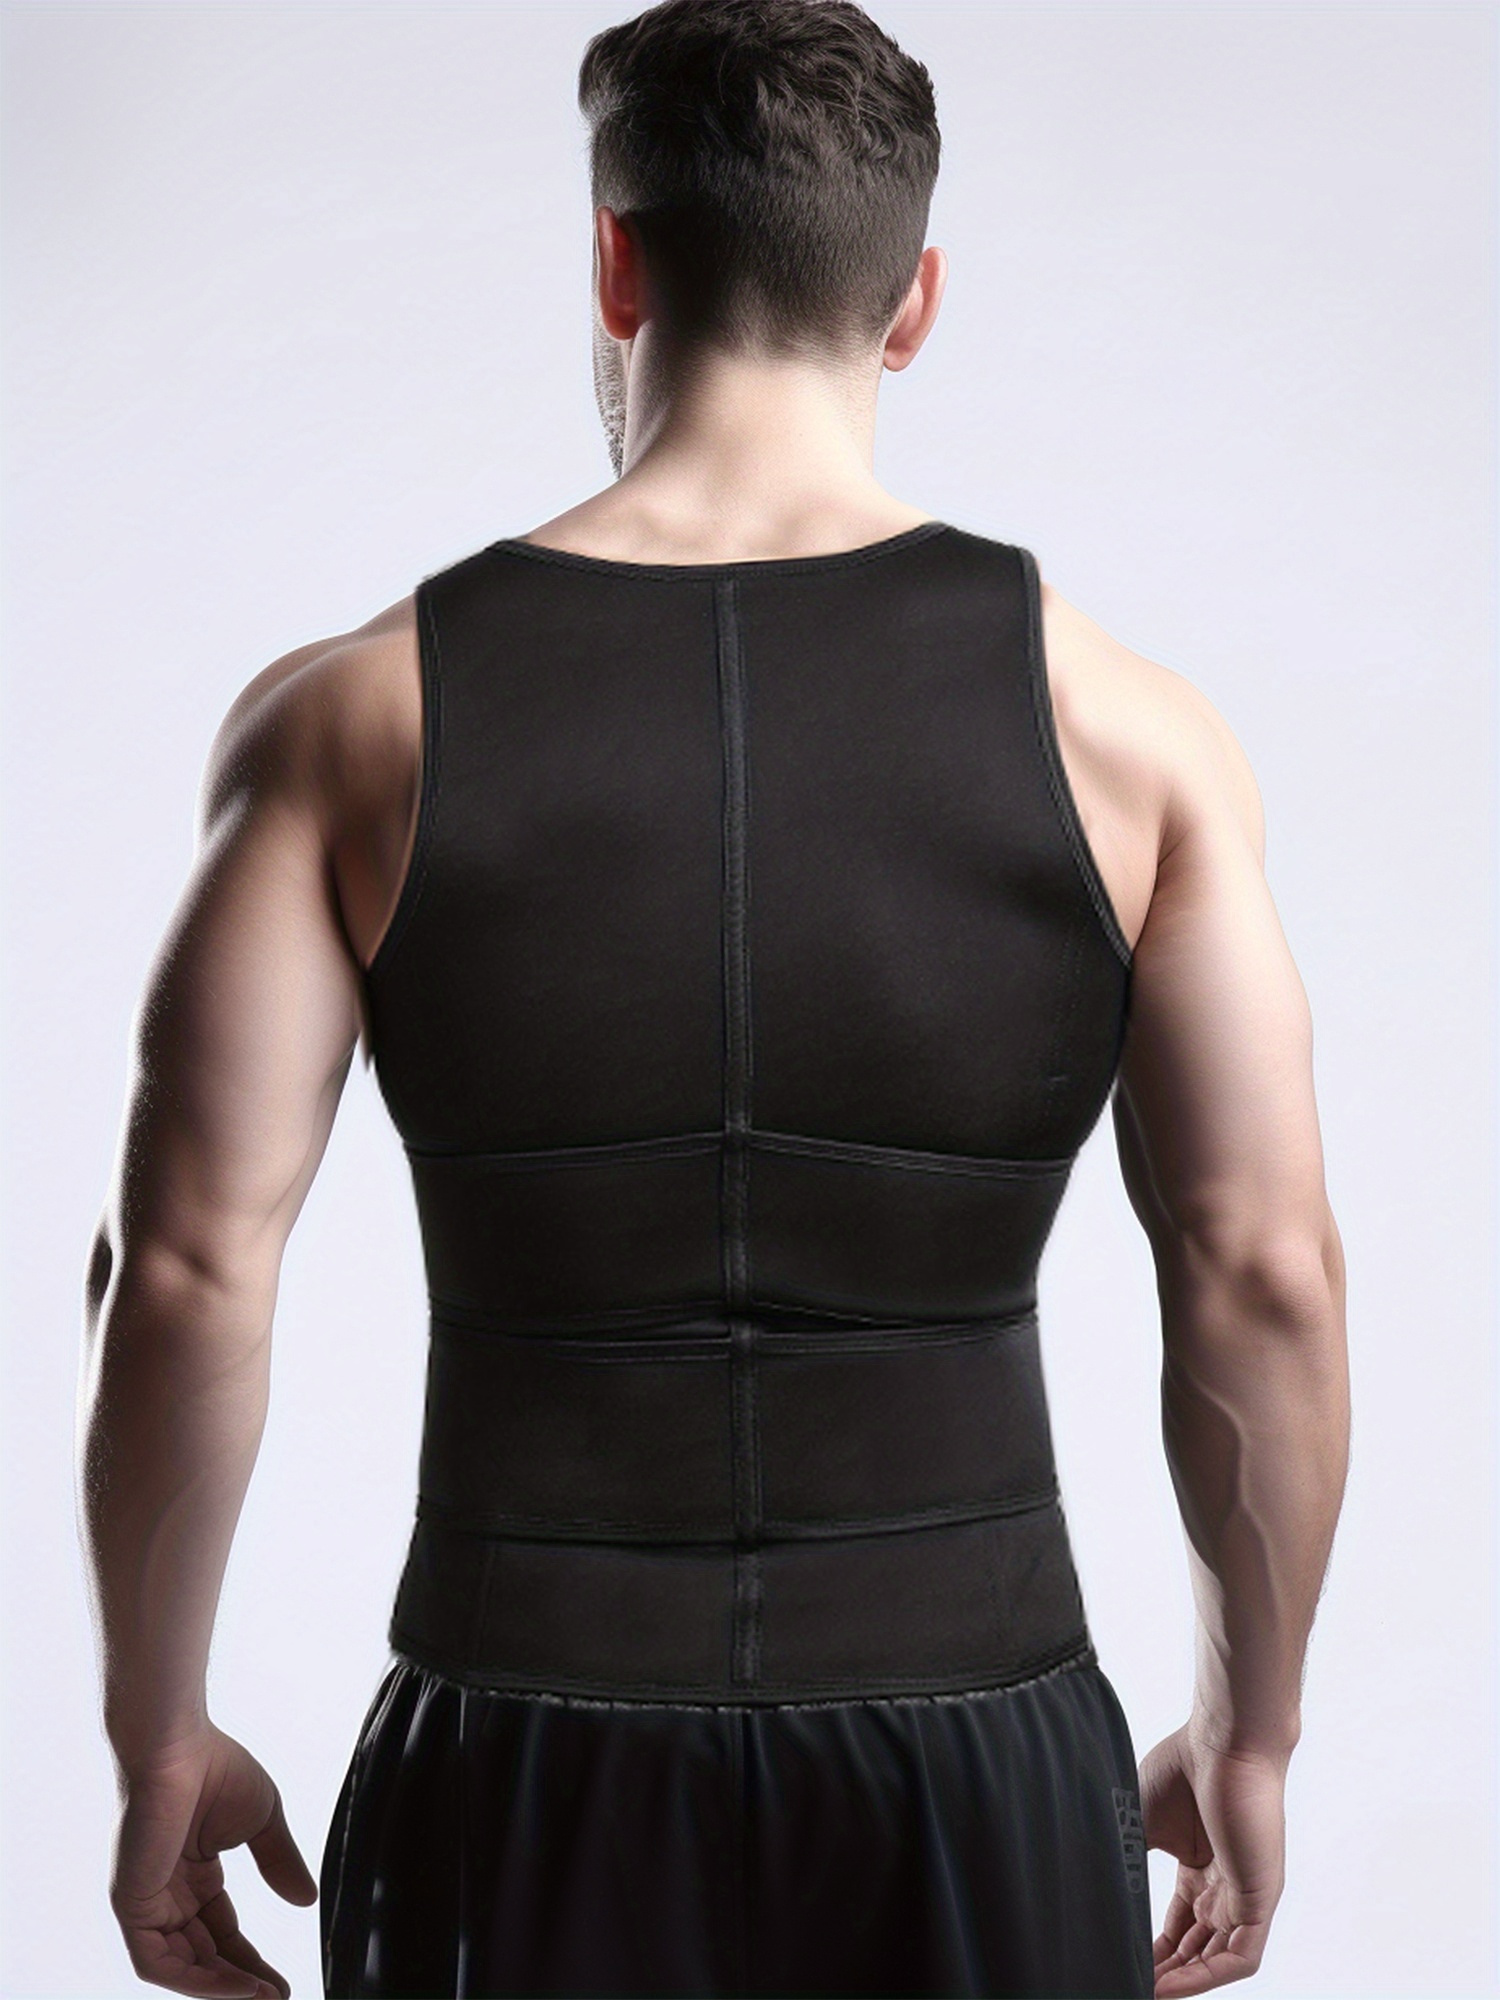 Men's Double Belt Vest Shapewear Neoprene Reinforced Sweat - Temu Canada